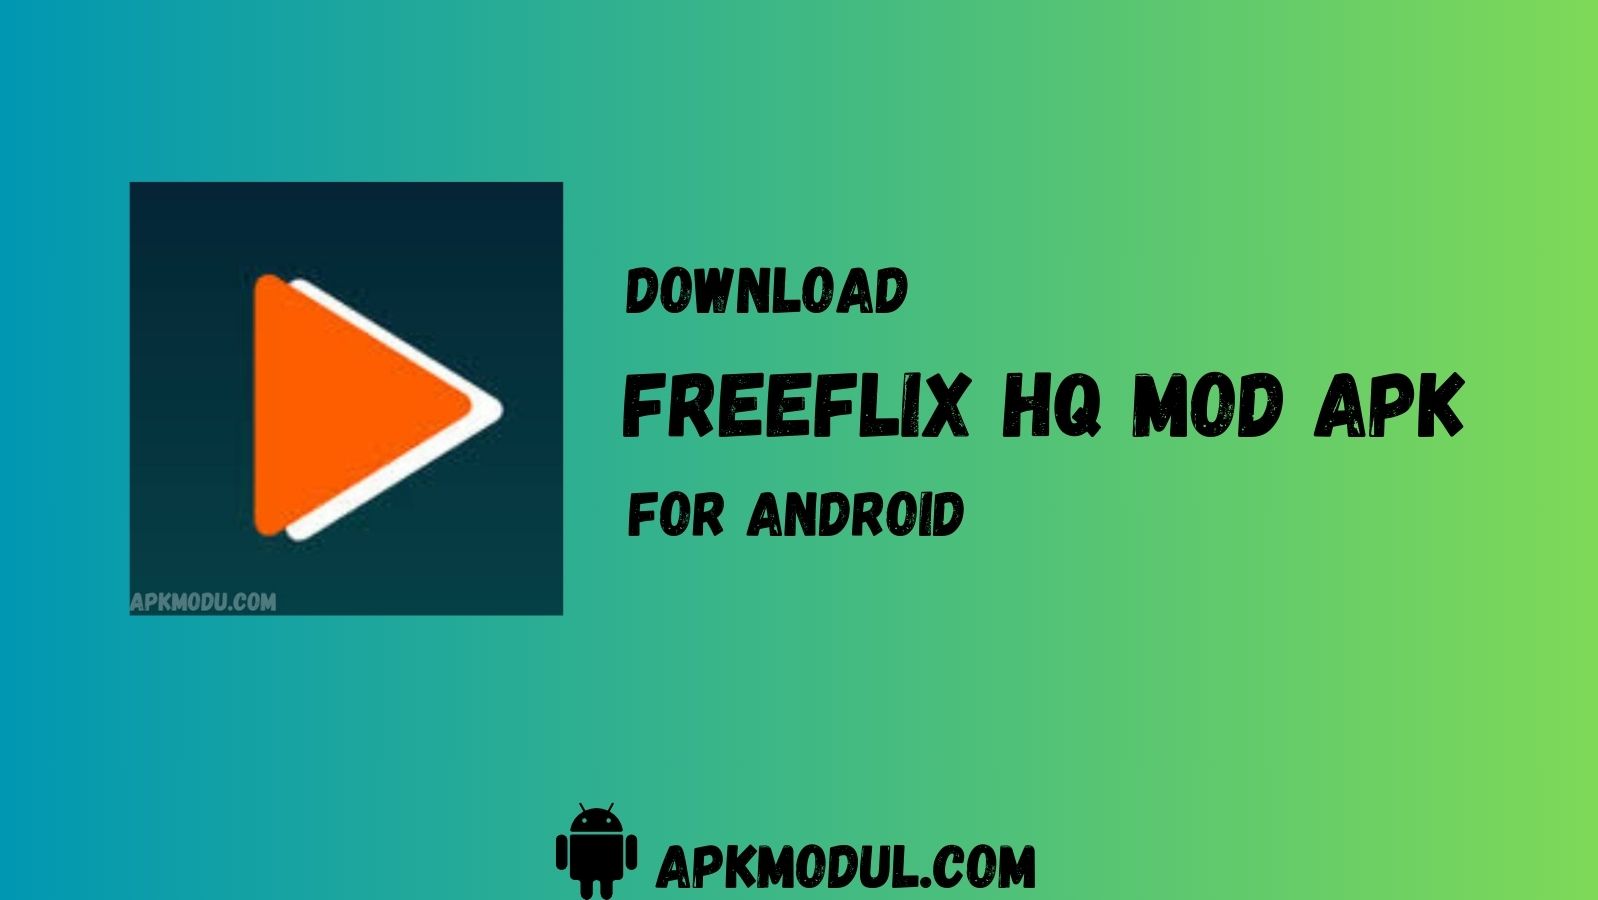 FreeFlix HQ MOD App